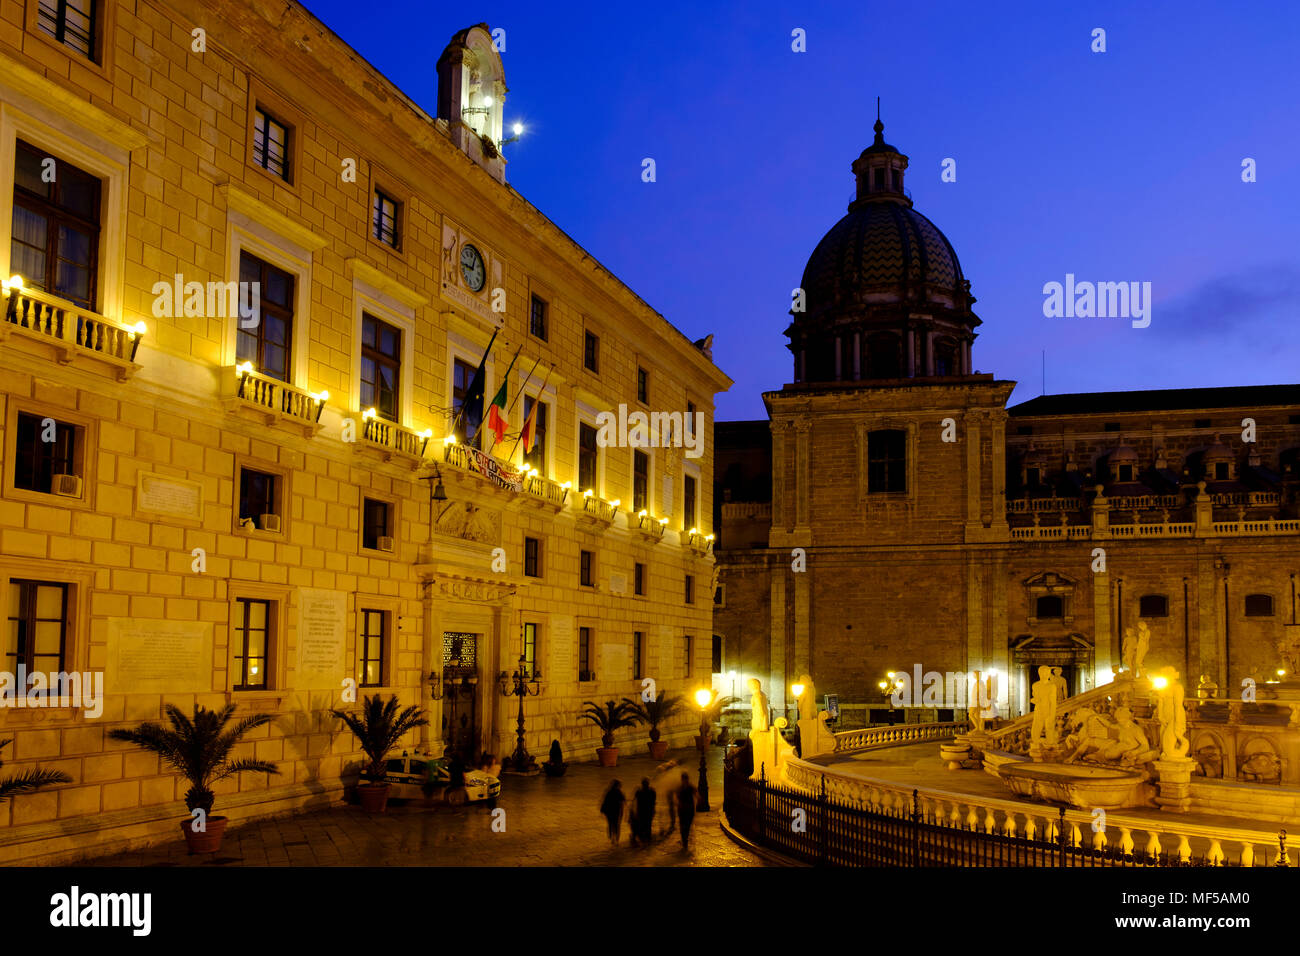 Fontana Pretoria, mit Palazzo Pretorio und San Giuseppe dei Teatini in der Dämmerung,  Piazza Pretoria, Palermo, Sizilien, Italien Stock Photo